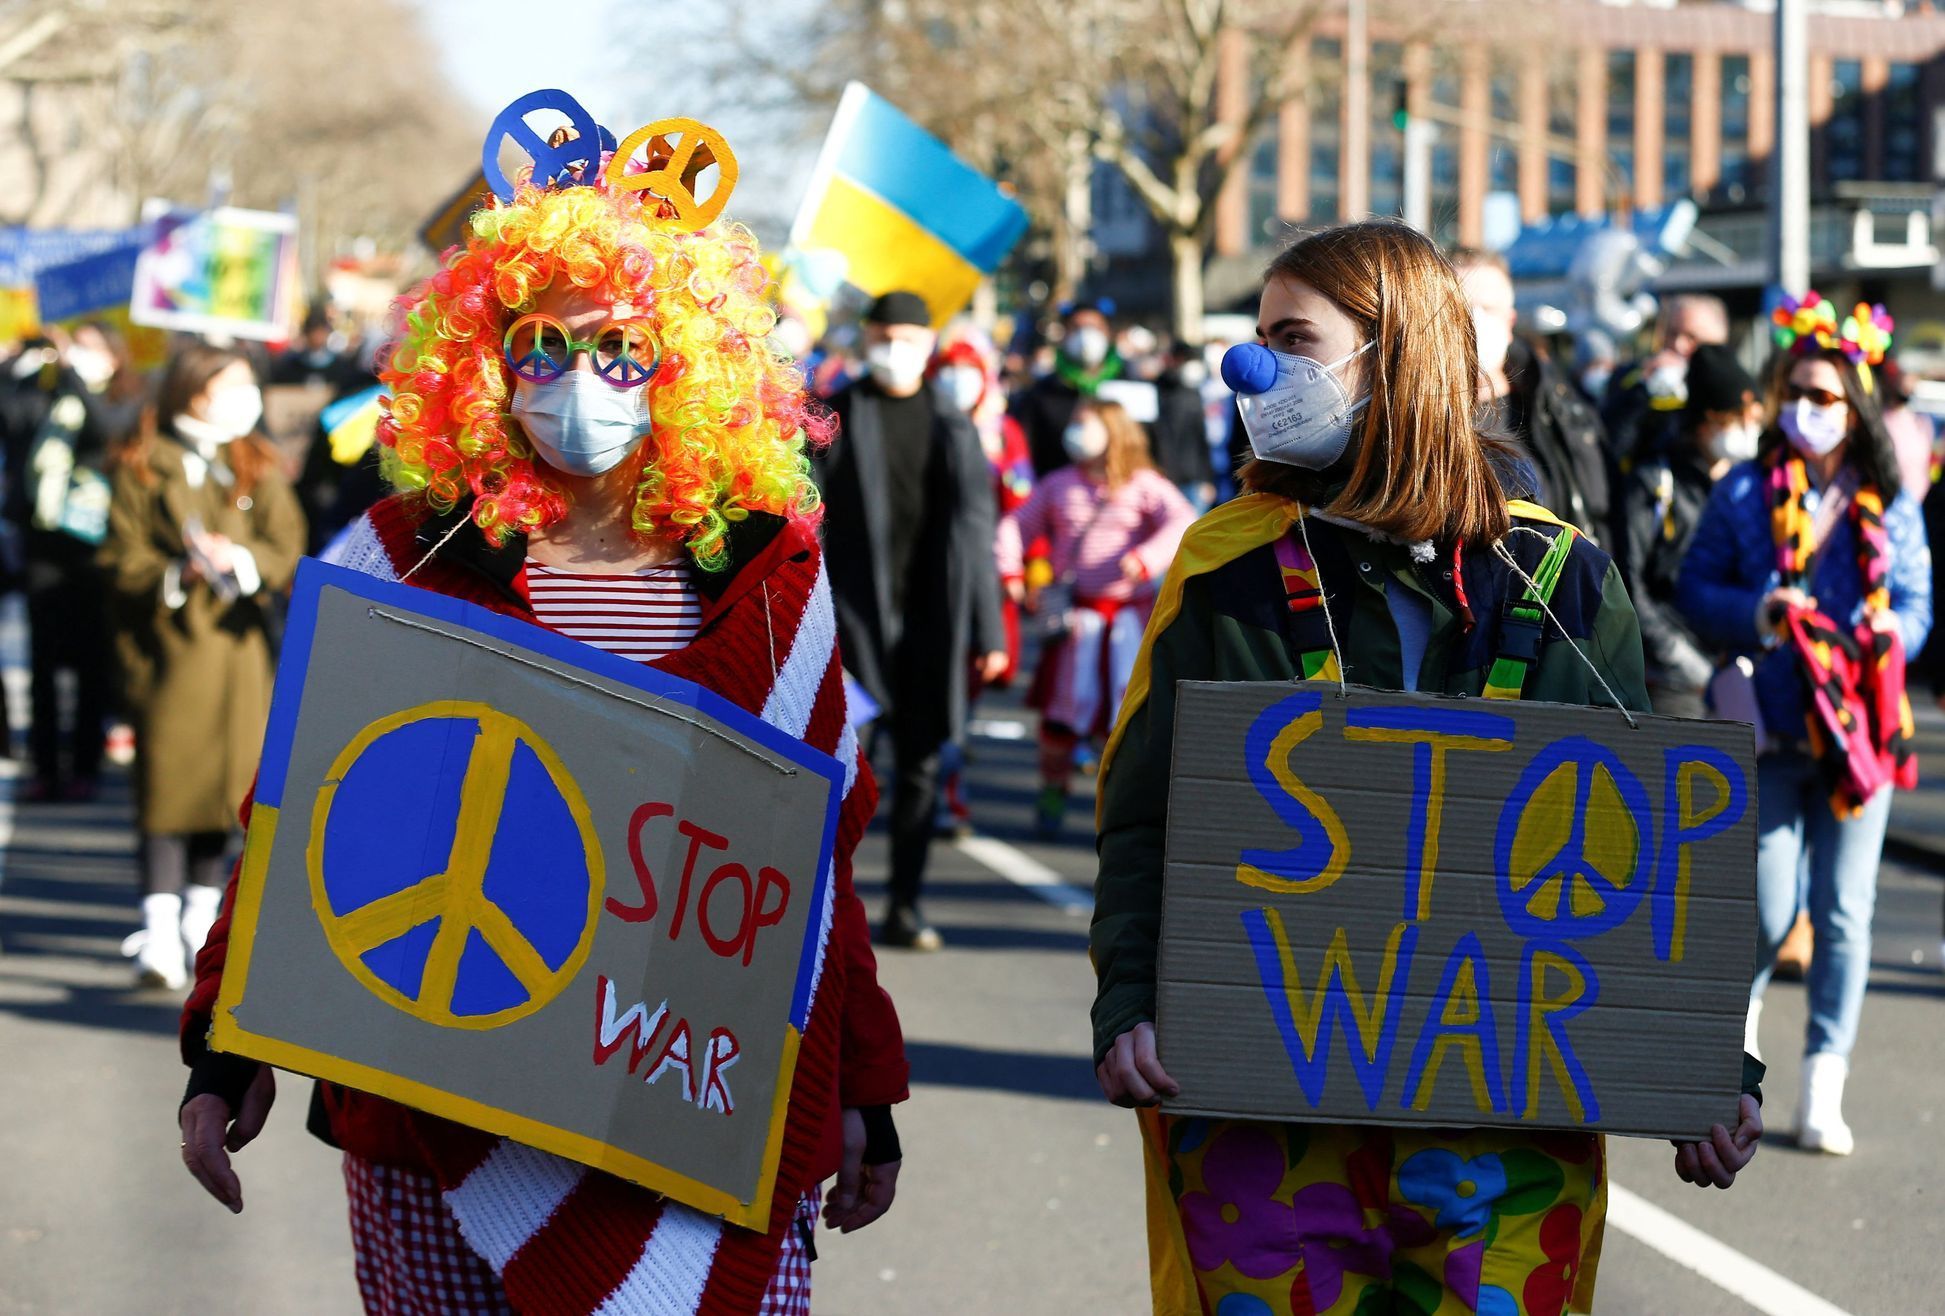 Protesty v Kolíně nad Rýnem proti válce na Ukrajině